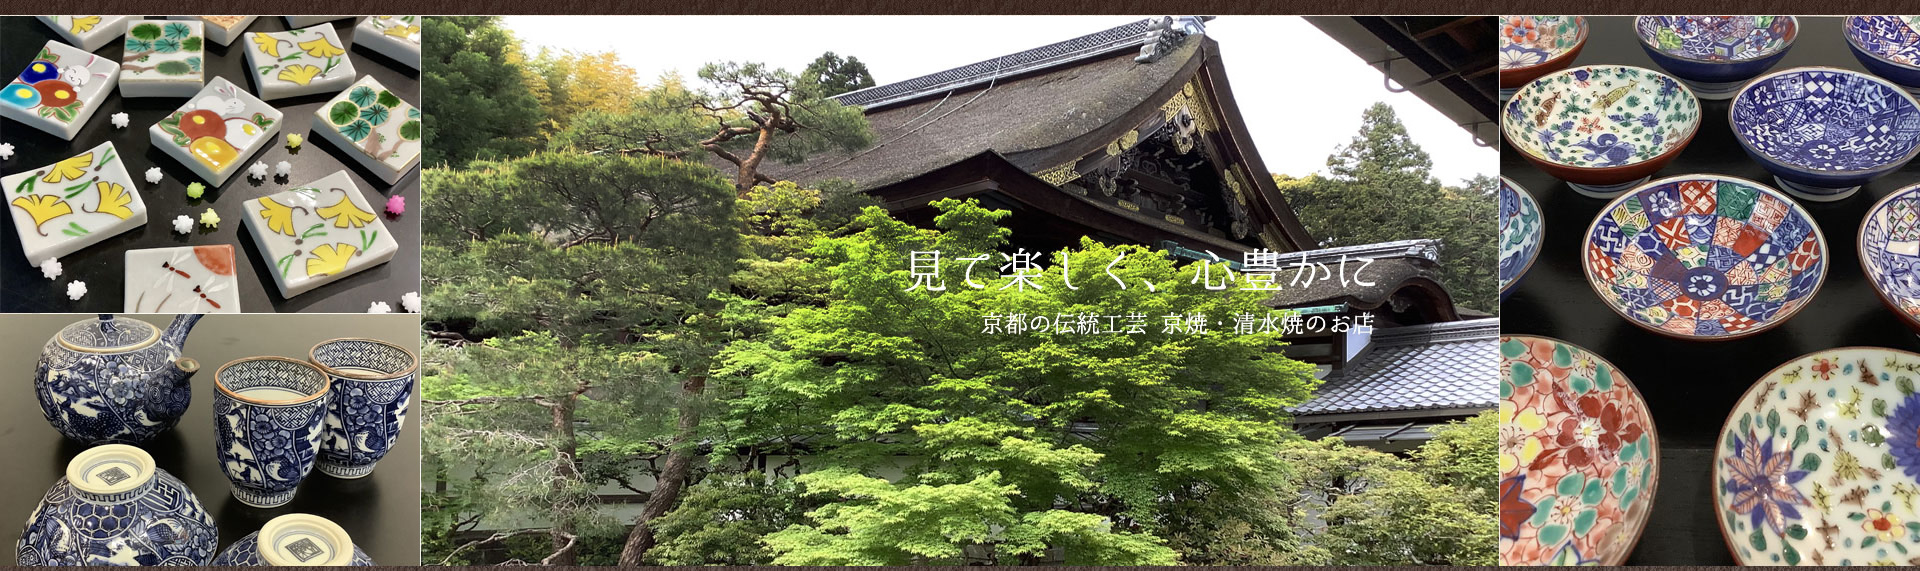 見て楽しく、心豊かに京都の伝統工芸京焼・清水焼のお店